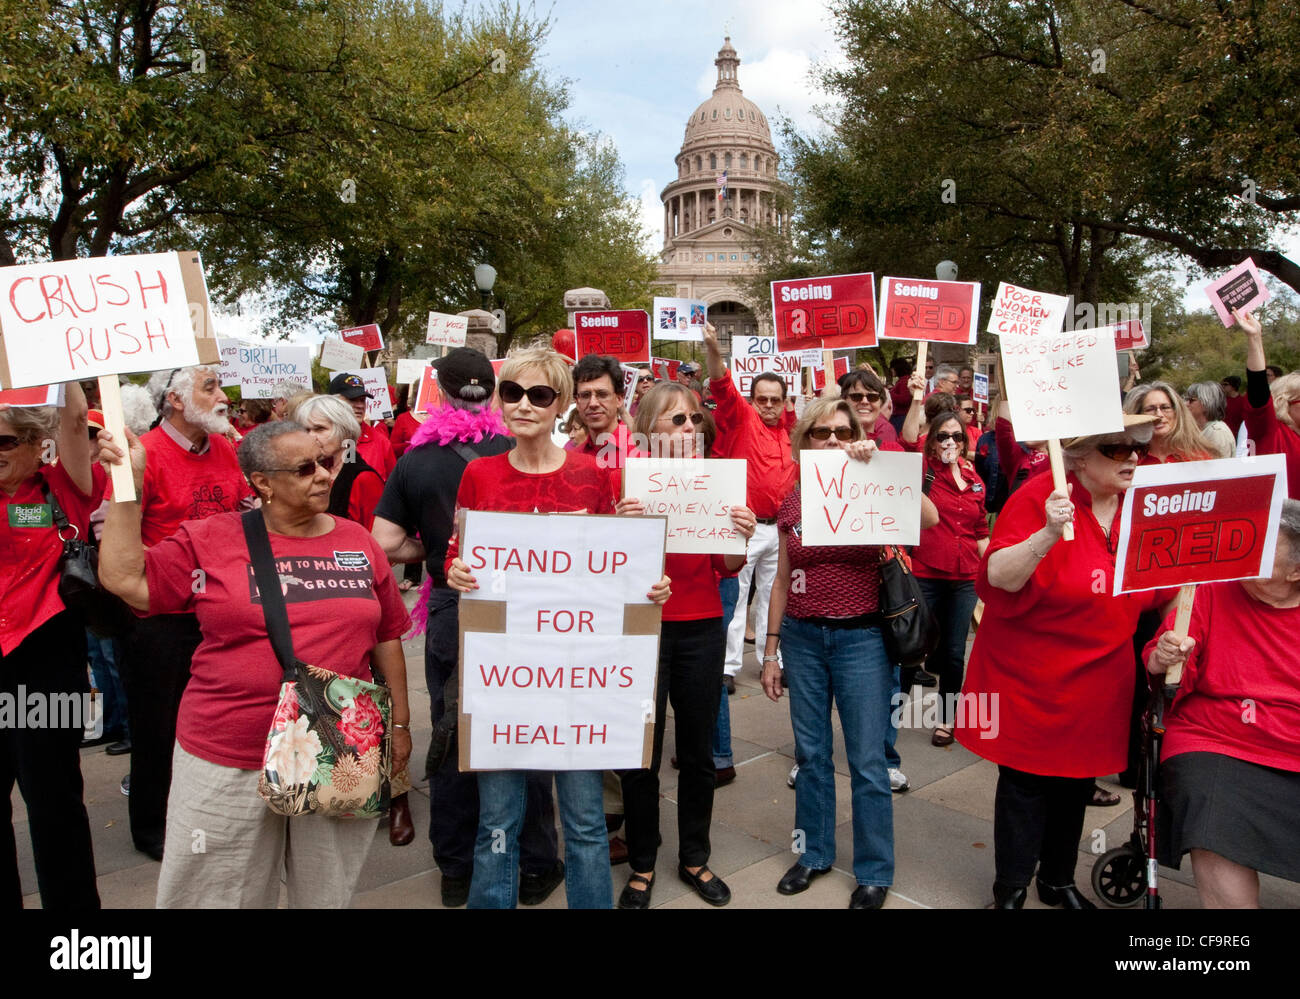 Foule devant des manifestations de la capitale du Texas Texas décision des législateurs qui réduit les fonds consacrés aux soins de santé pour les femmes à faible revenu Banque D'Images